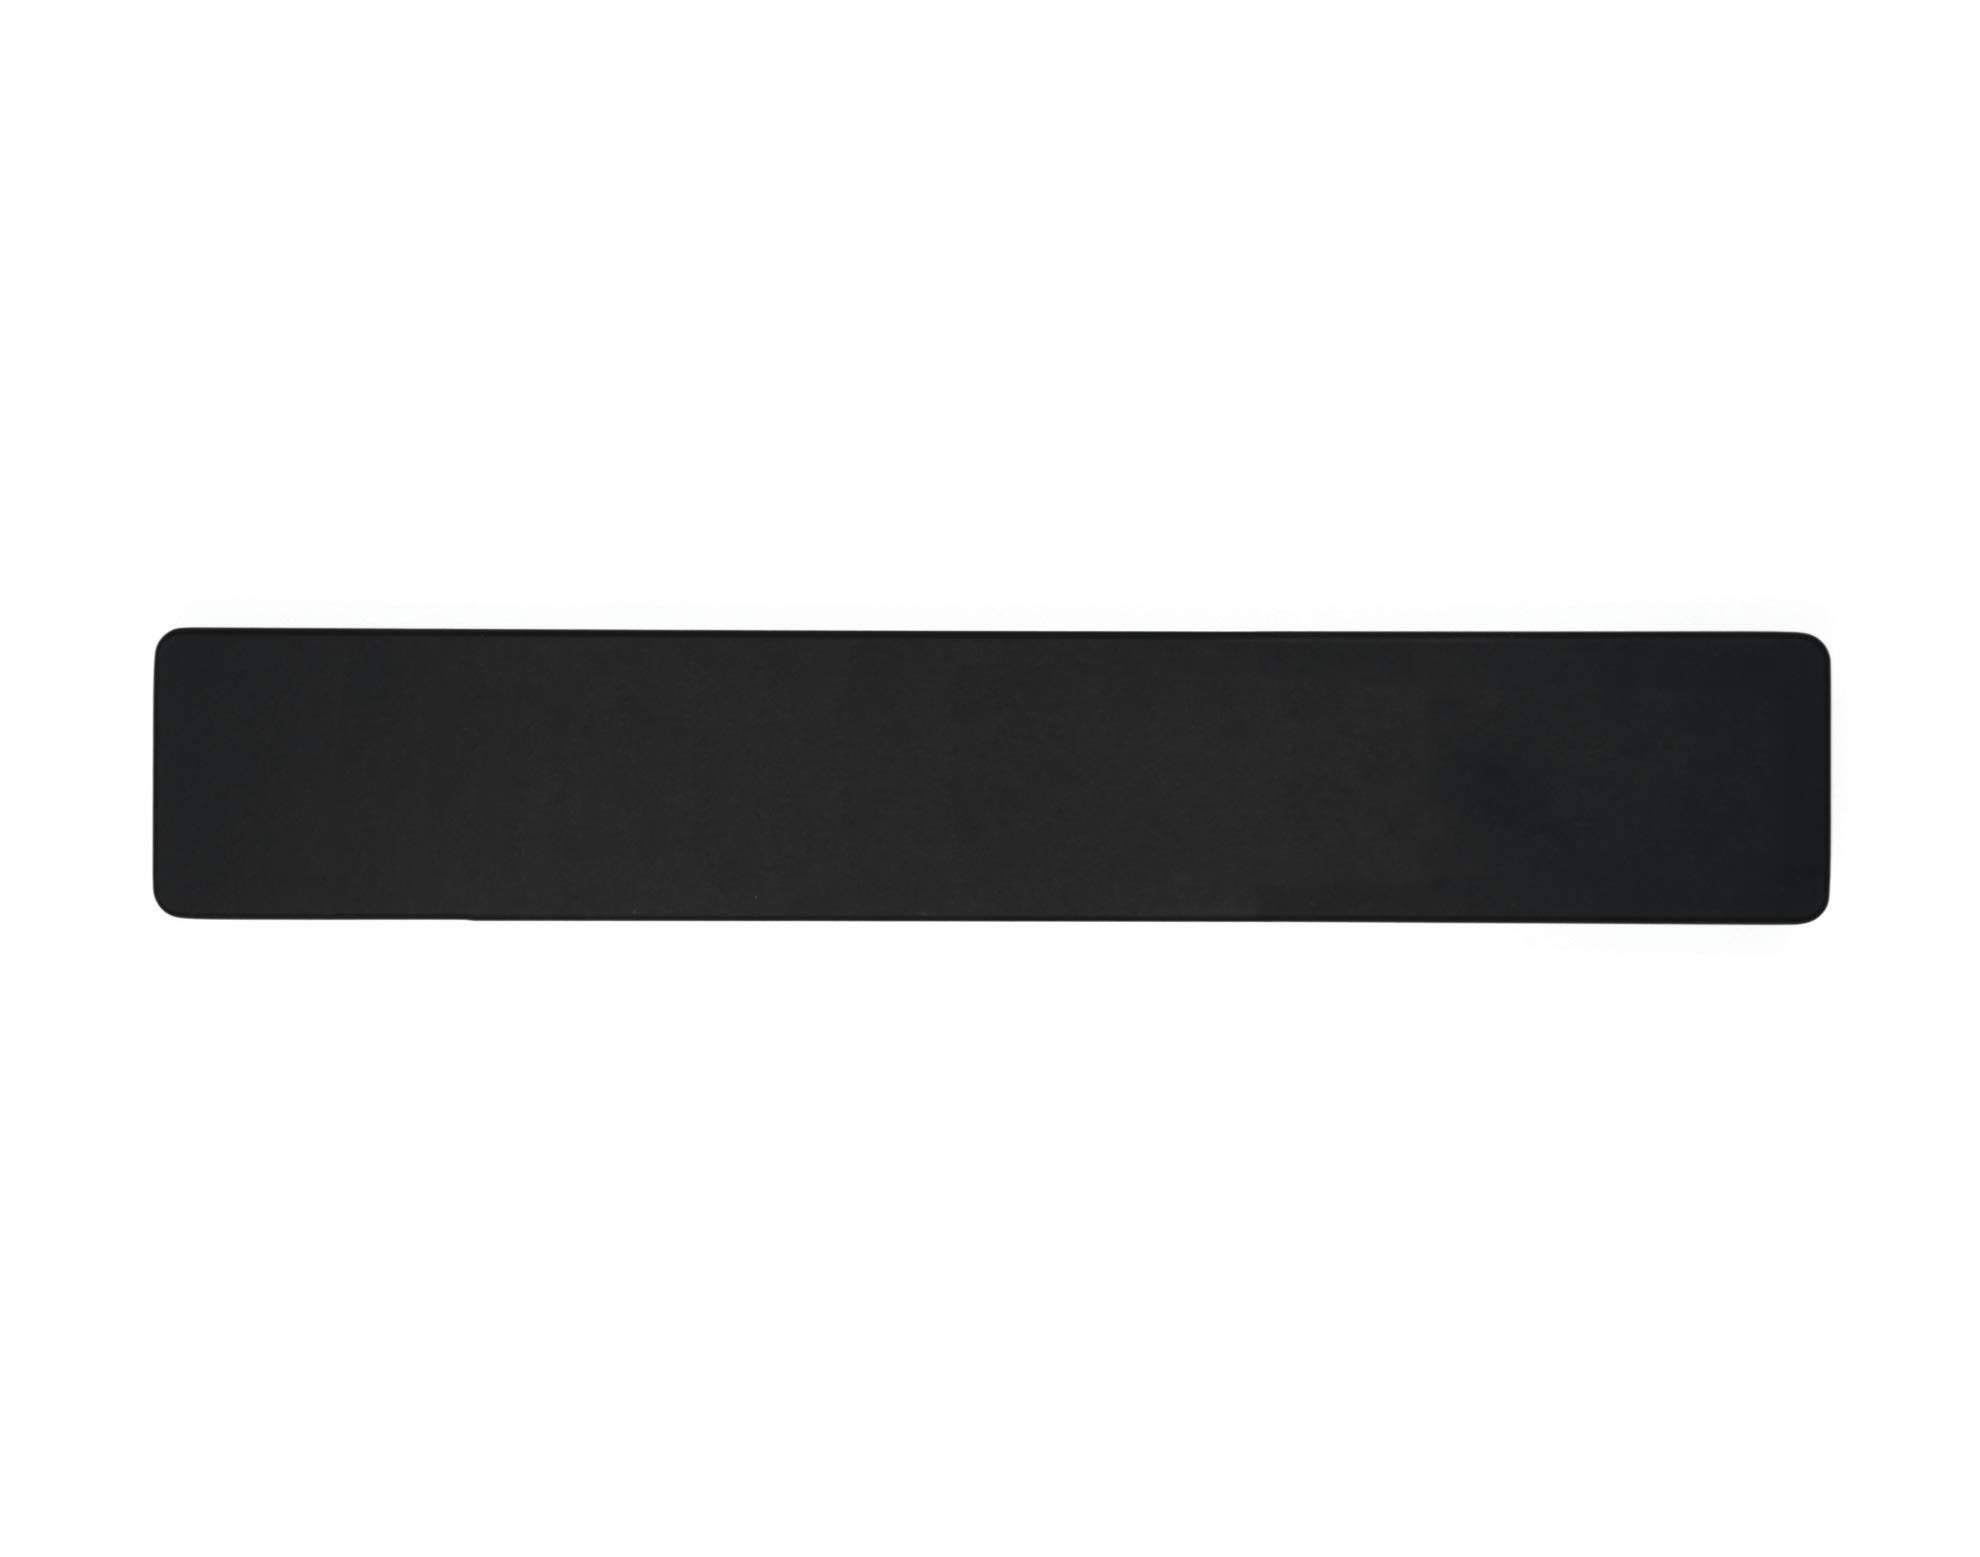 Epicurean Ultra Strong Magnetic Knife Holder - Black, 0.75" X 15" X 2.5